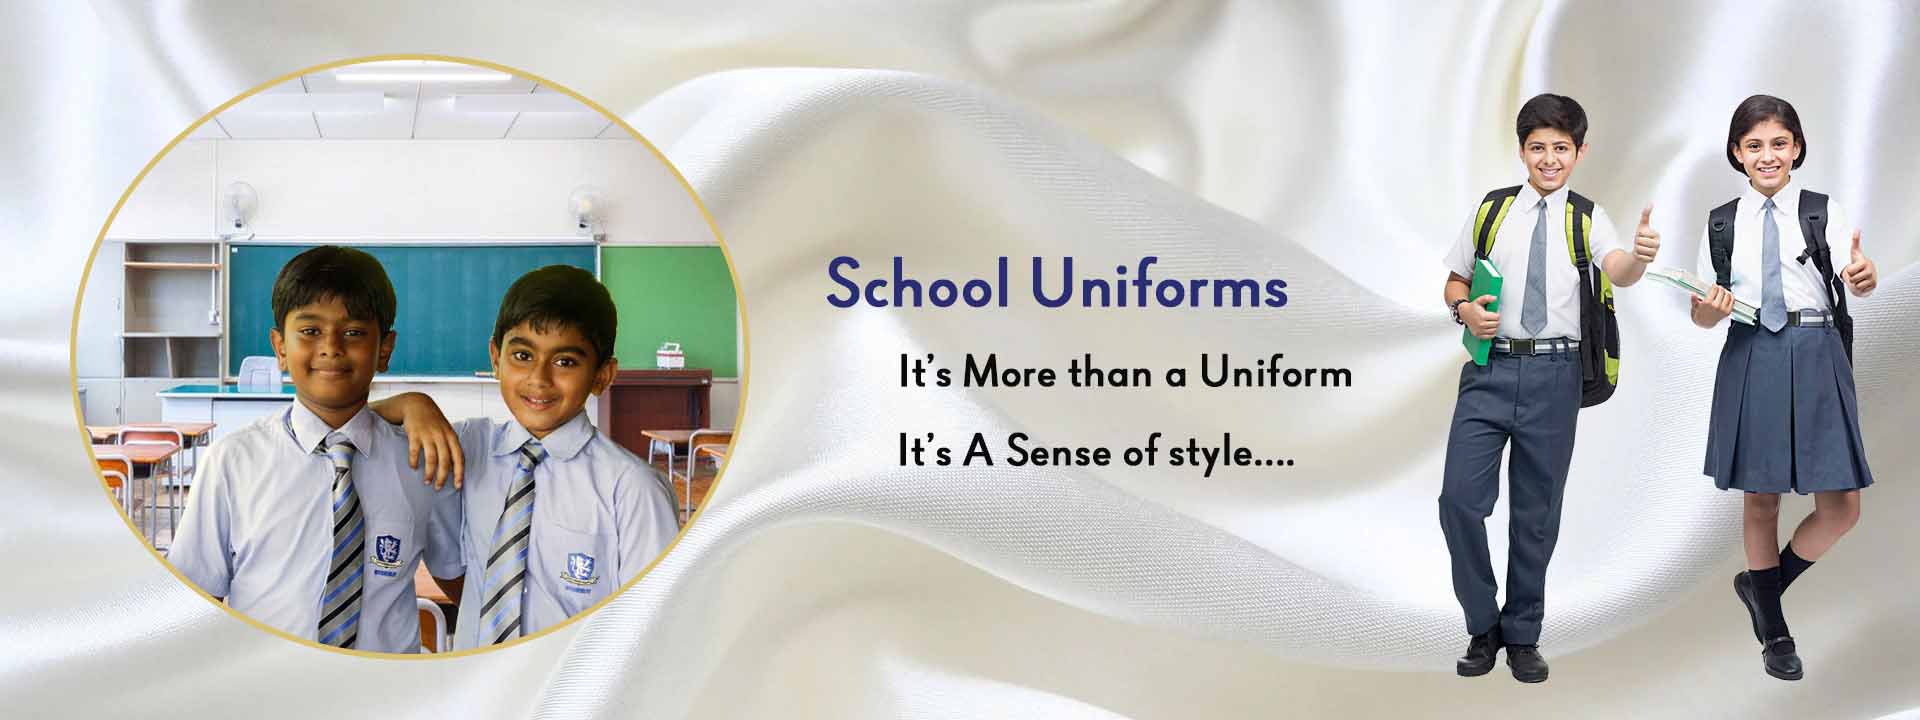 school-uniforms-sliders